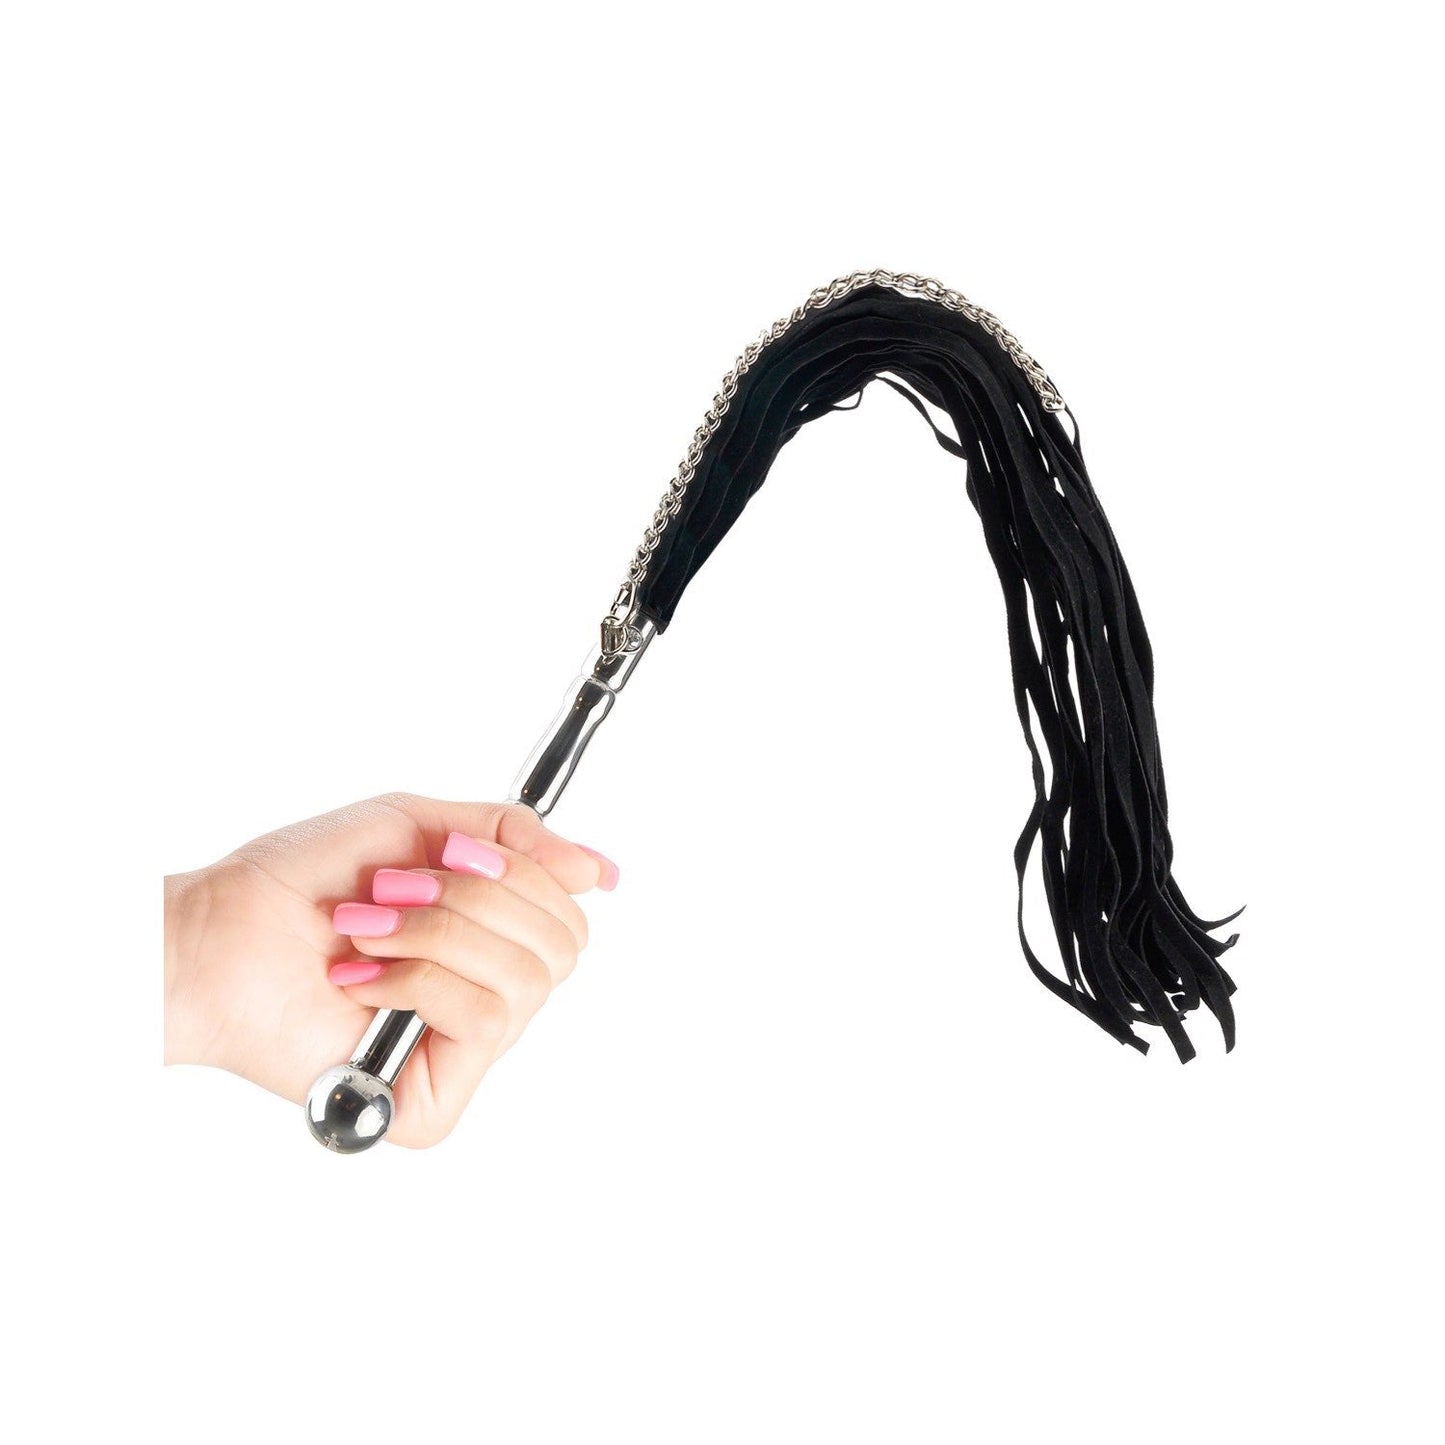 串珠金属鞭打者 - 黑色 60 厘米鞭子